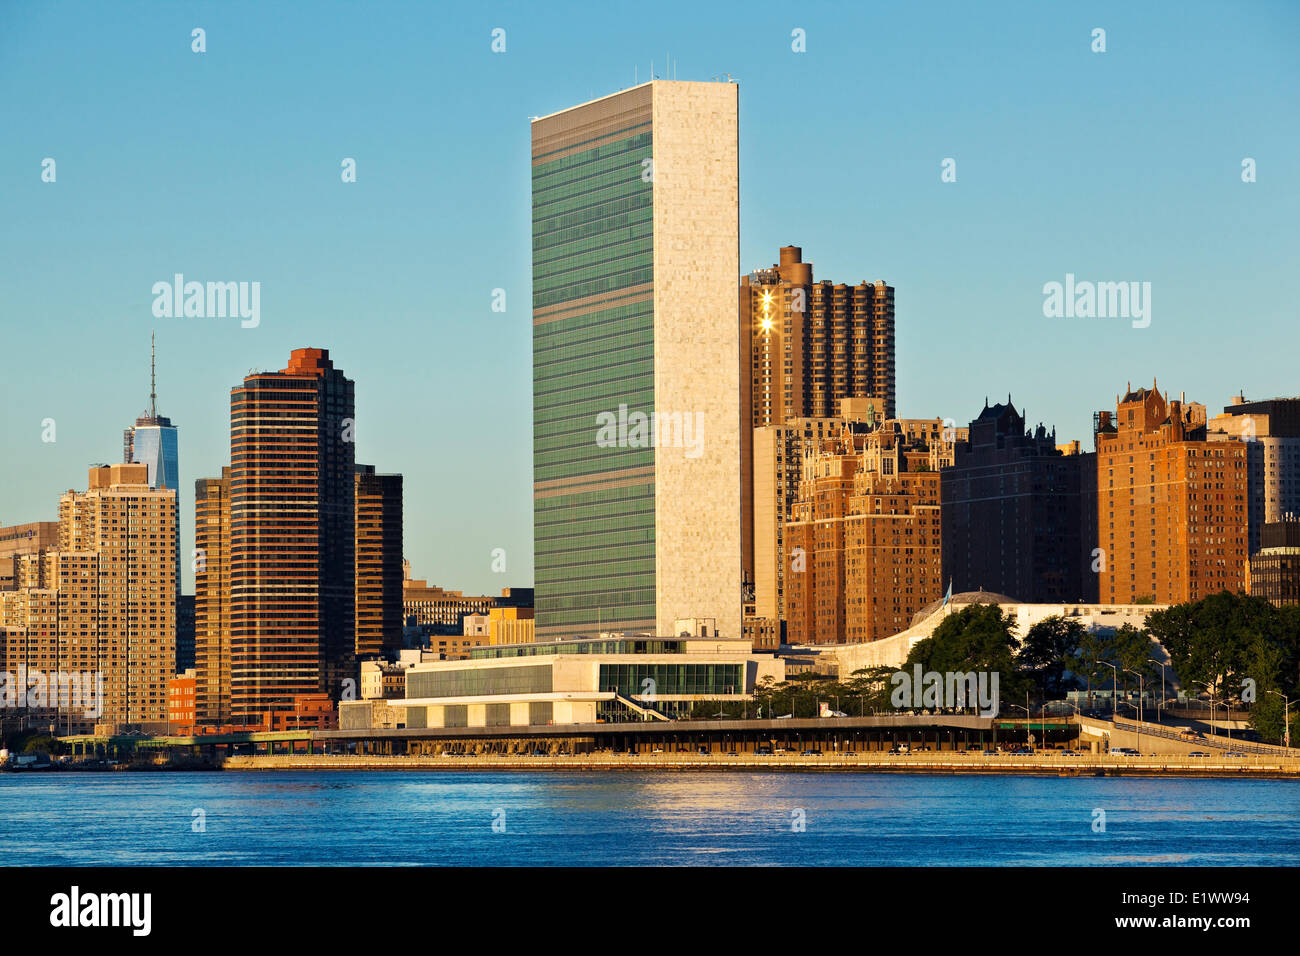 Gesehenen Roosevelt Island Hauptsitz der Vereinten Nationen nimmt 17 Hektar Land in Manhattans Lower East Side an der Küste Stockfoto